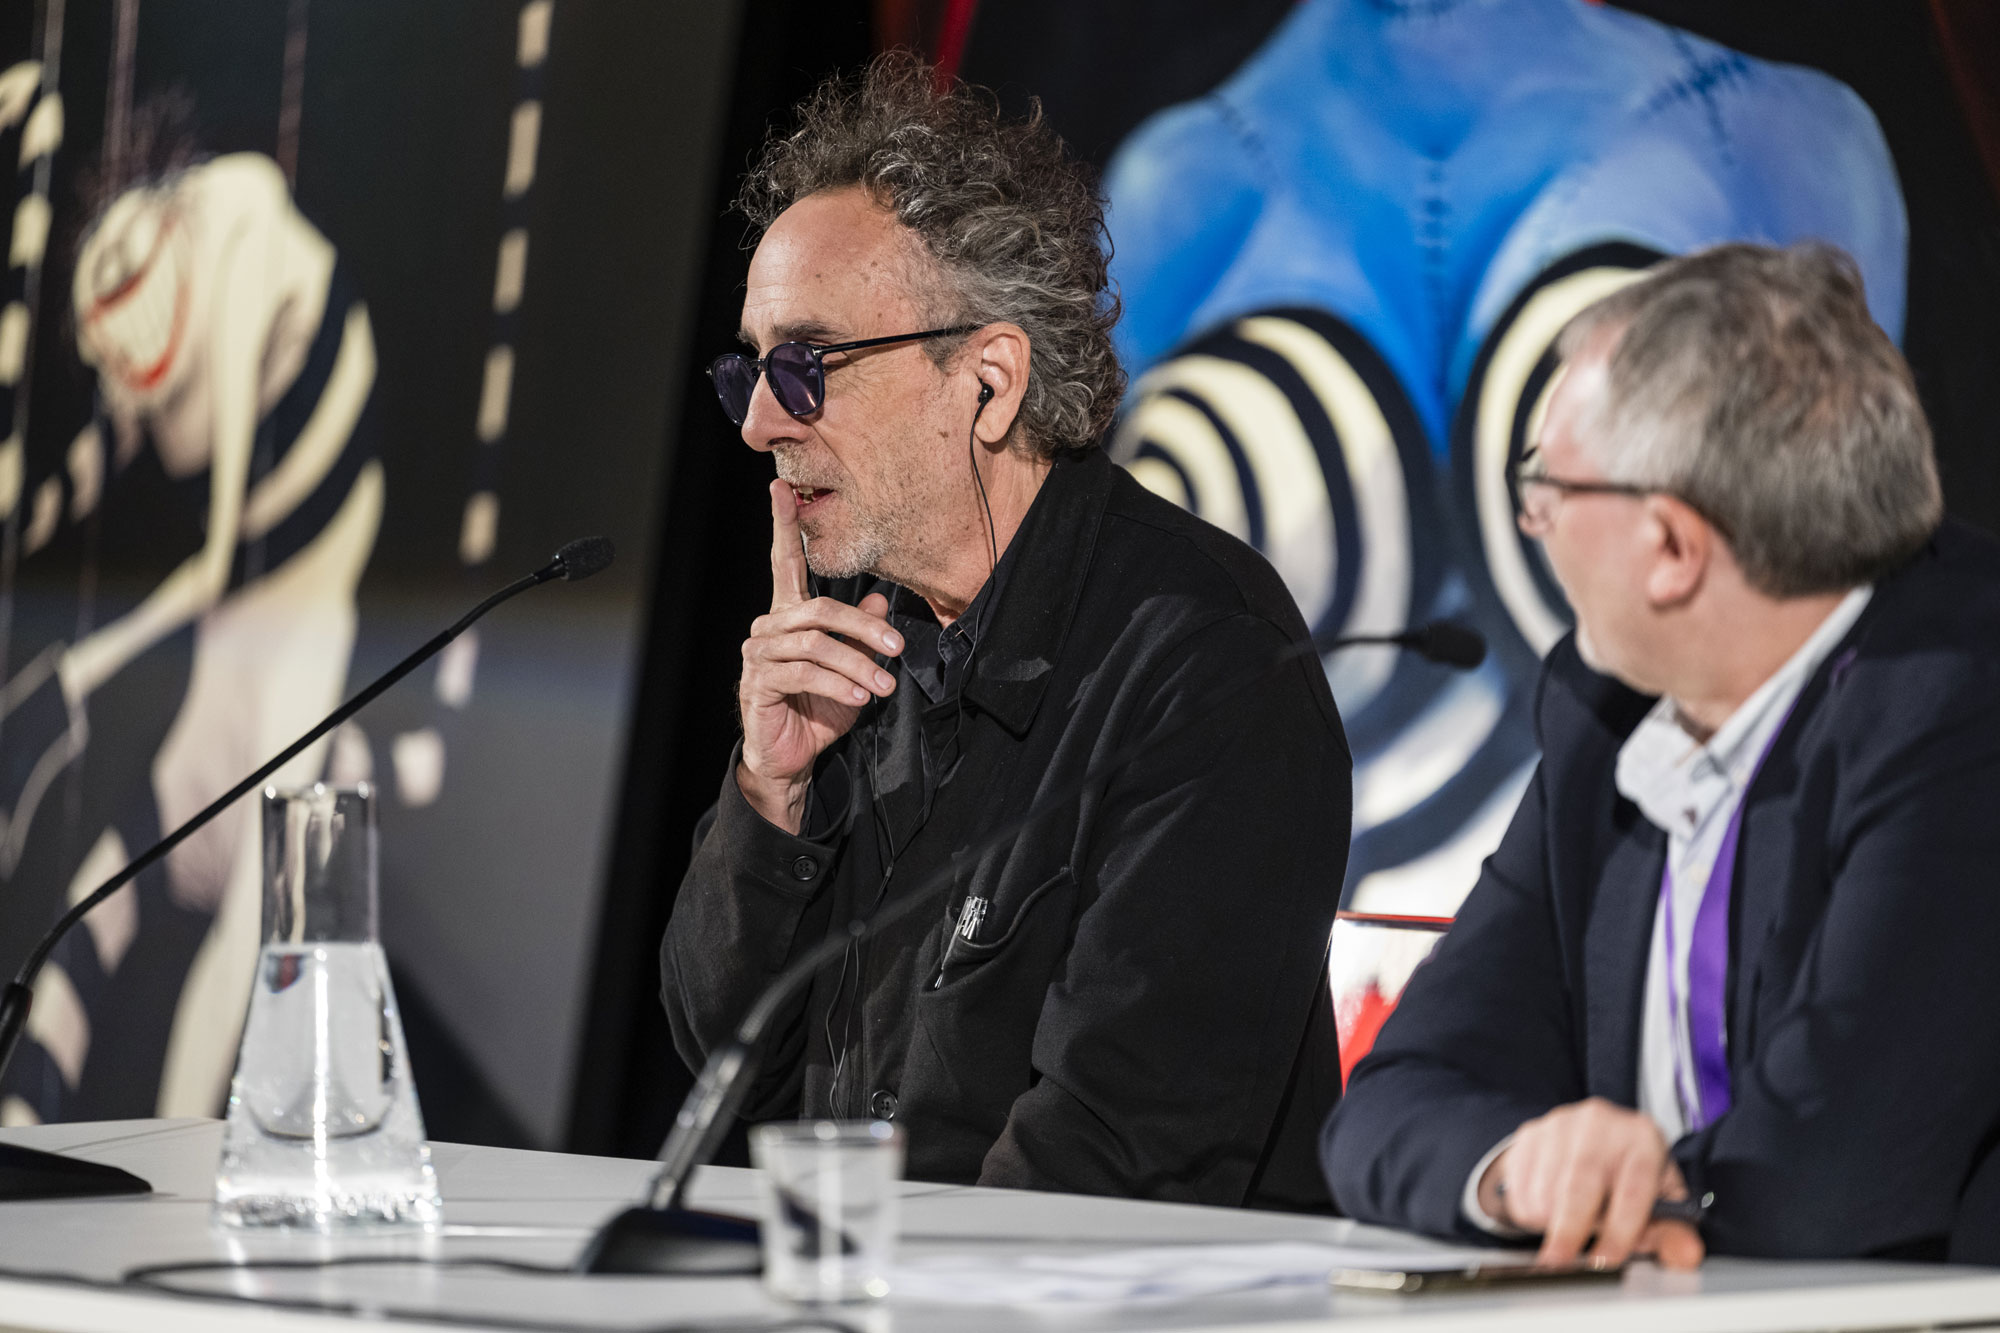 Tim Burton conferenza stampa The world of Tim Burton [credit: Andrea Guermani; courtesy of Ufficio Stampa mostra]